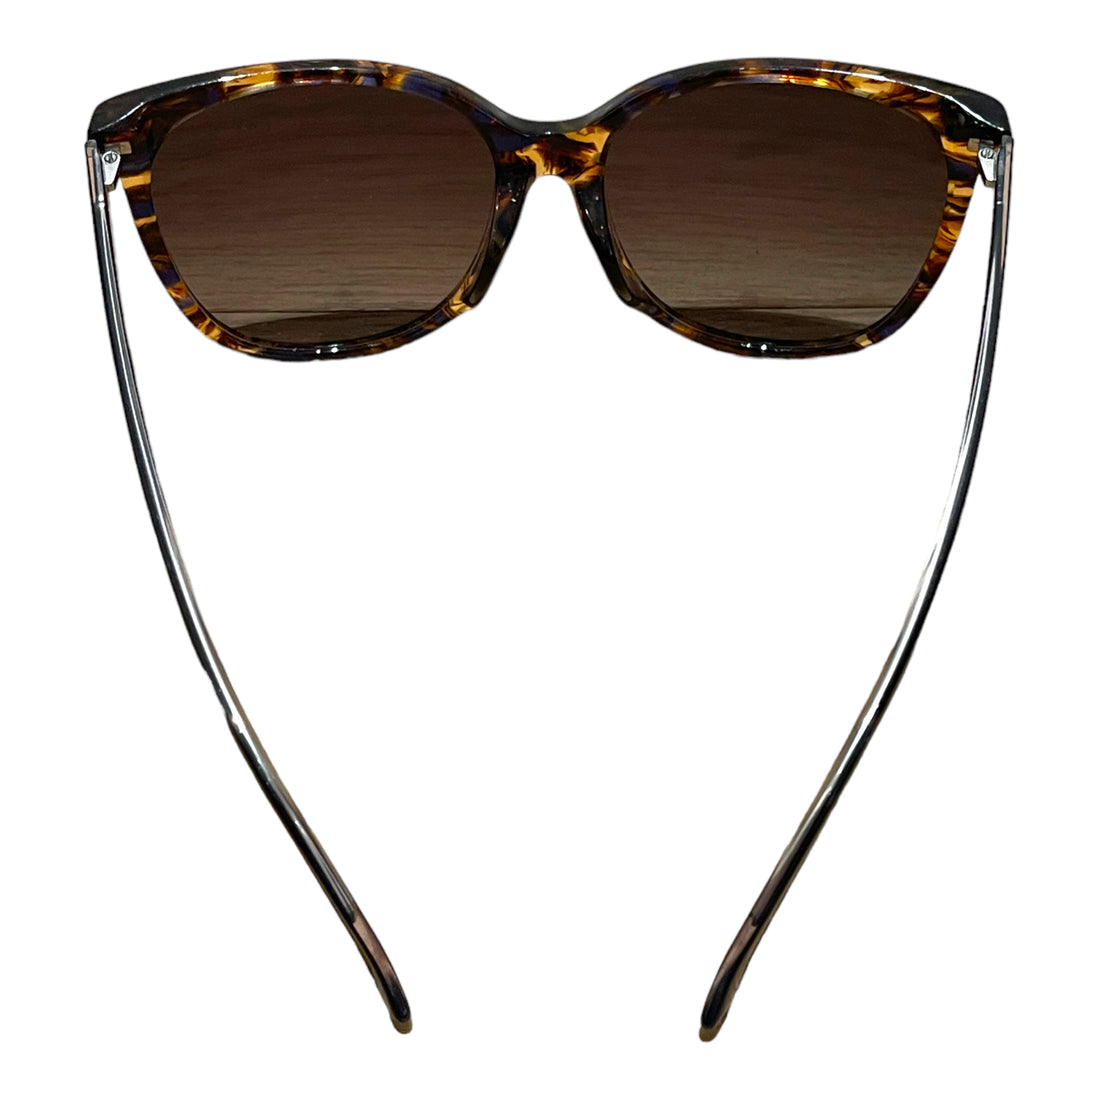 Gucci Sonnenbrille in Hornoptik mit dunkelblauen Bügeln